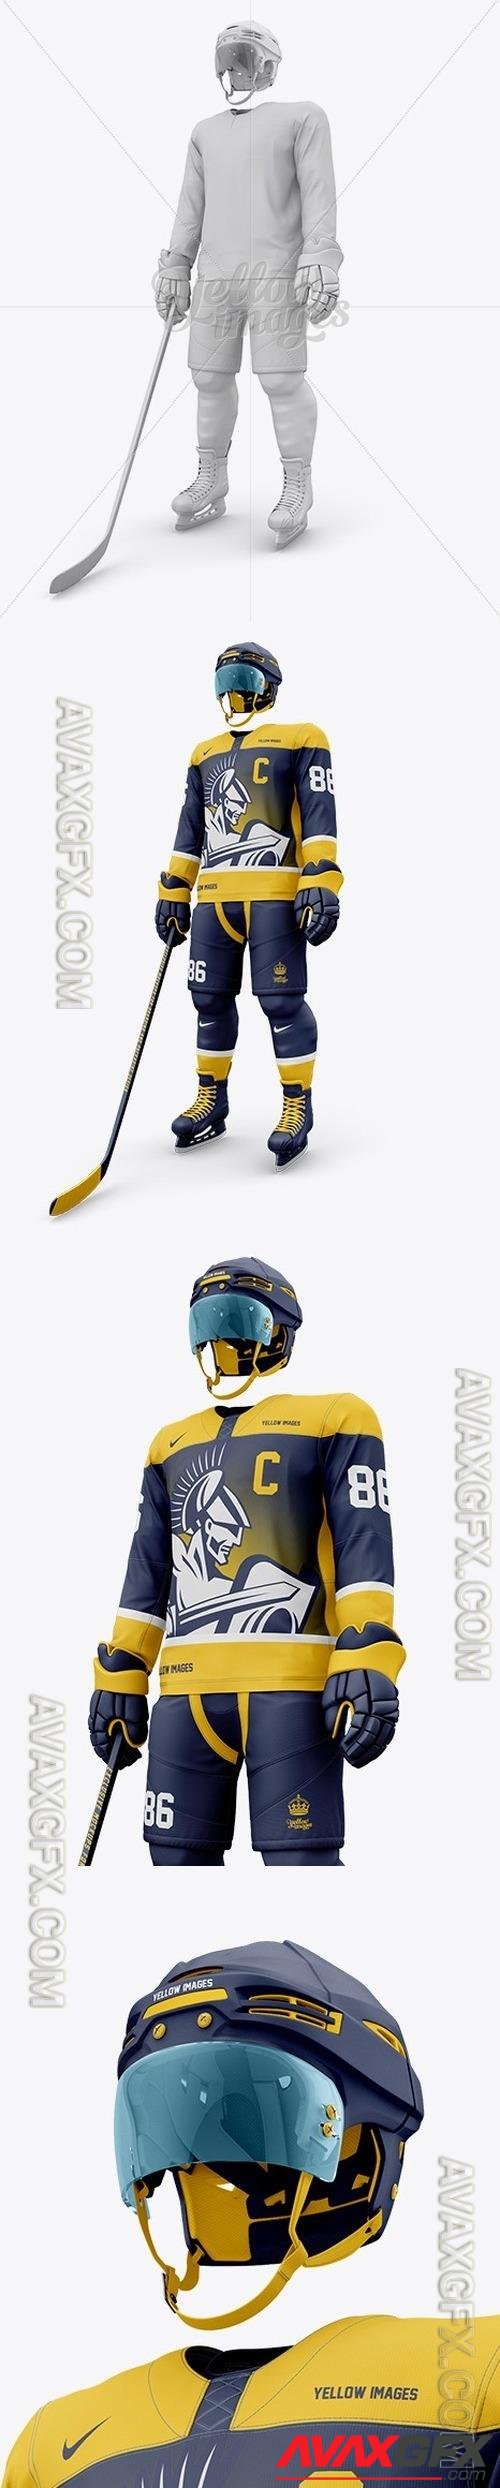 Men’s Full Ice Hockey Kit with Visor mockup (Half Side View) 14843  